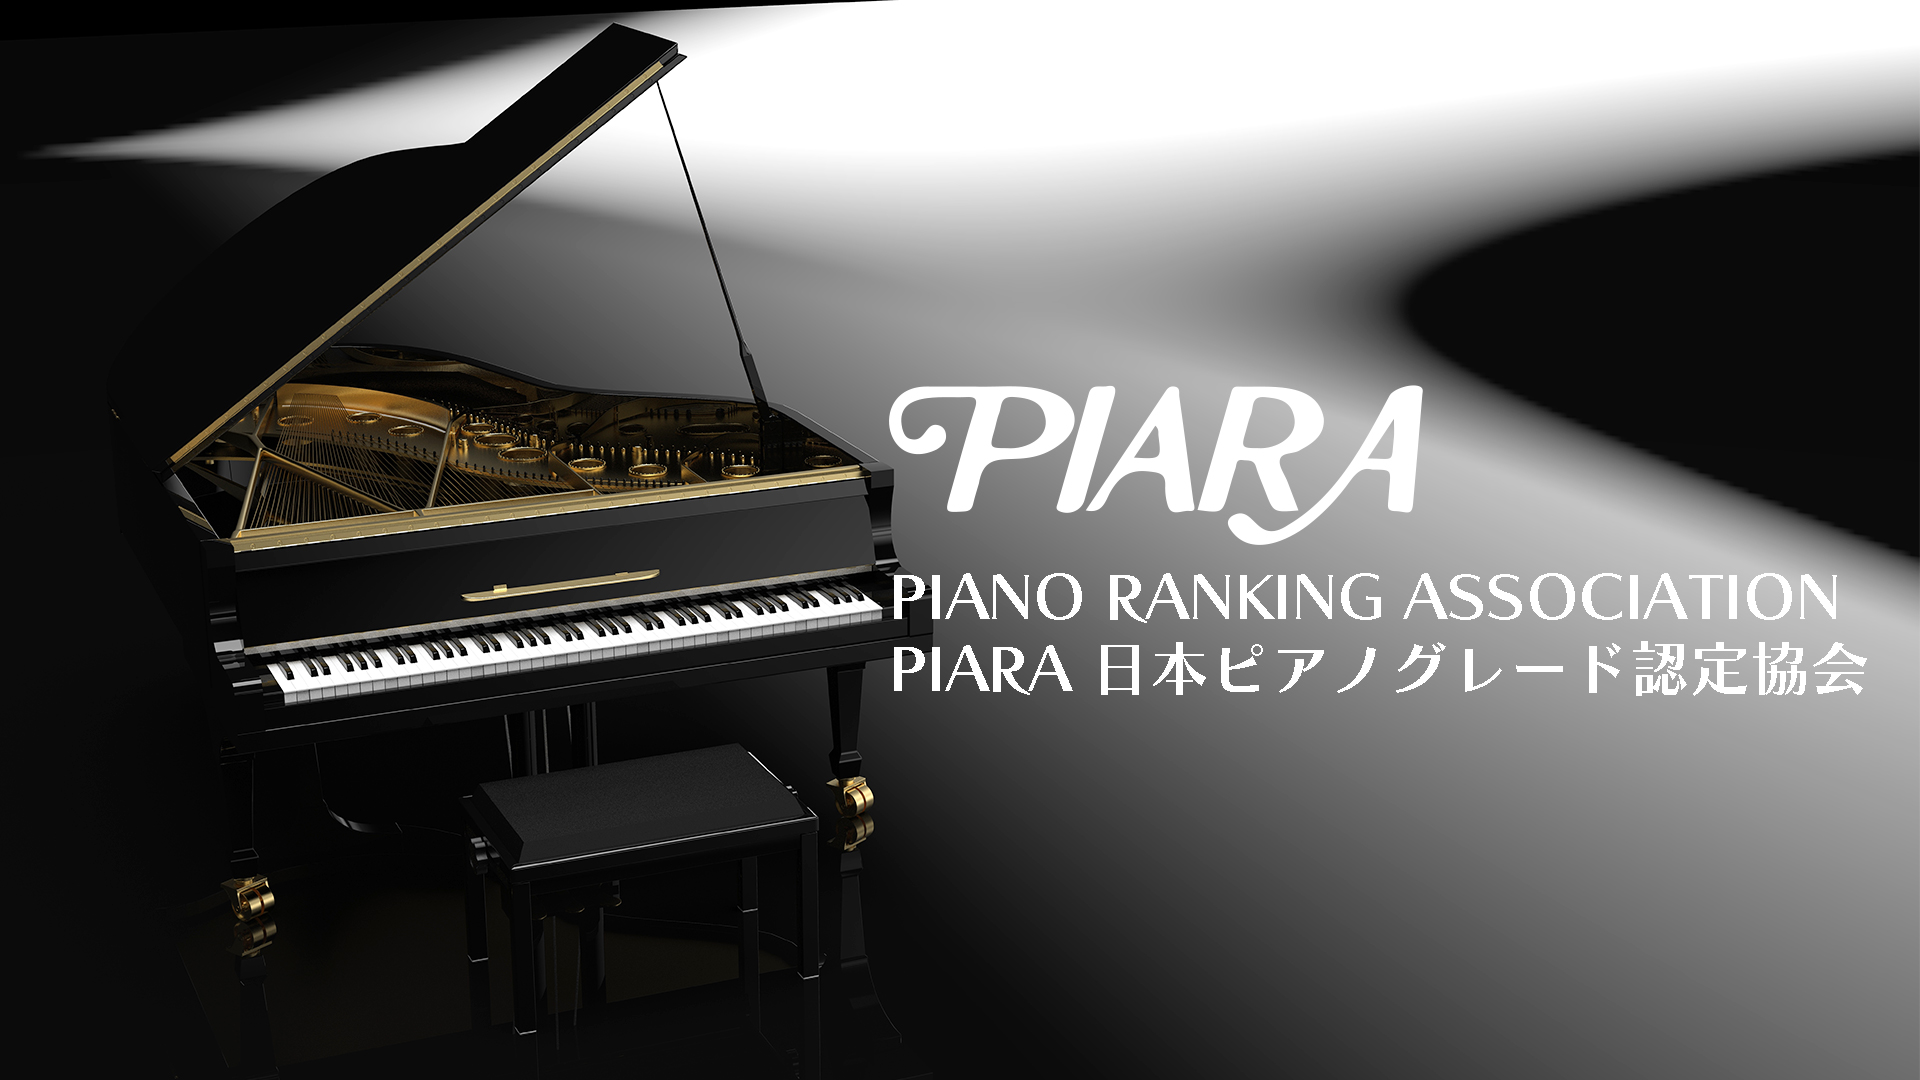 ピアラ 日本ピアノグレード認定協会のバナー画像